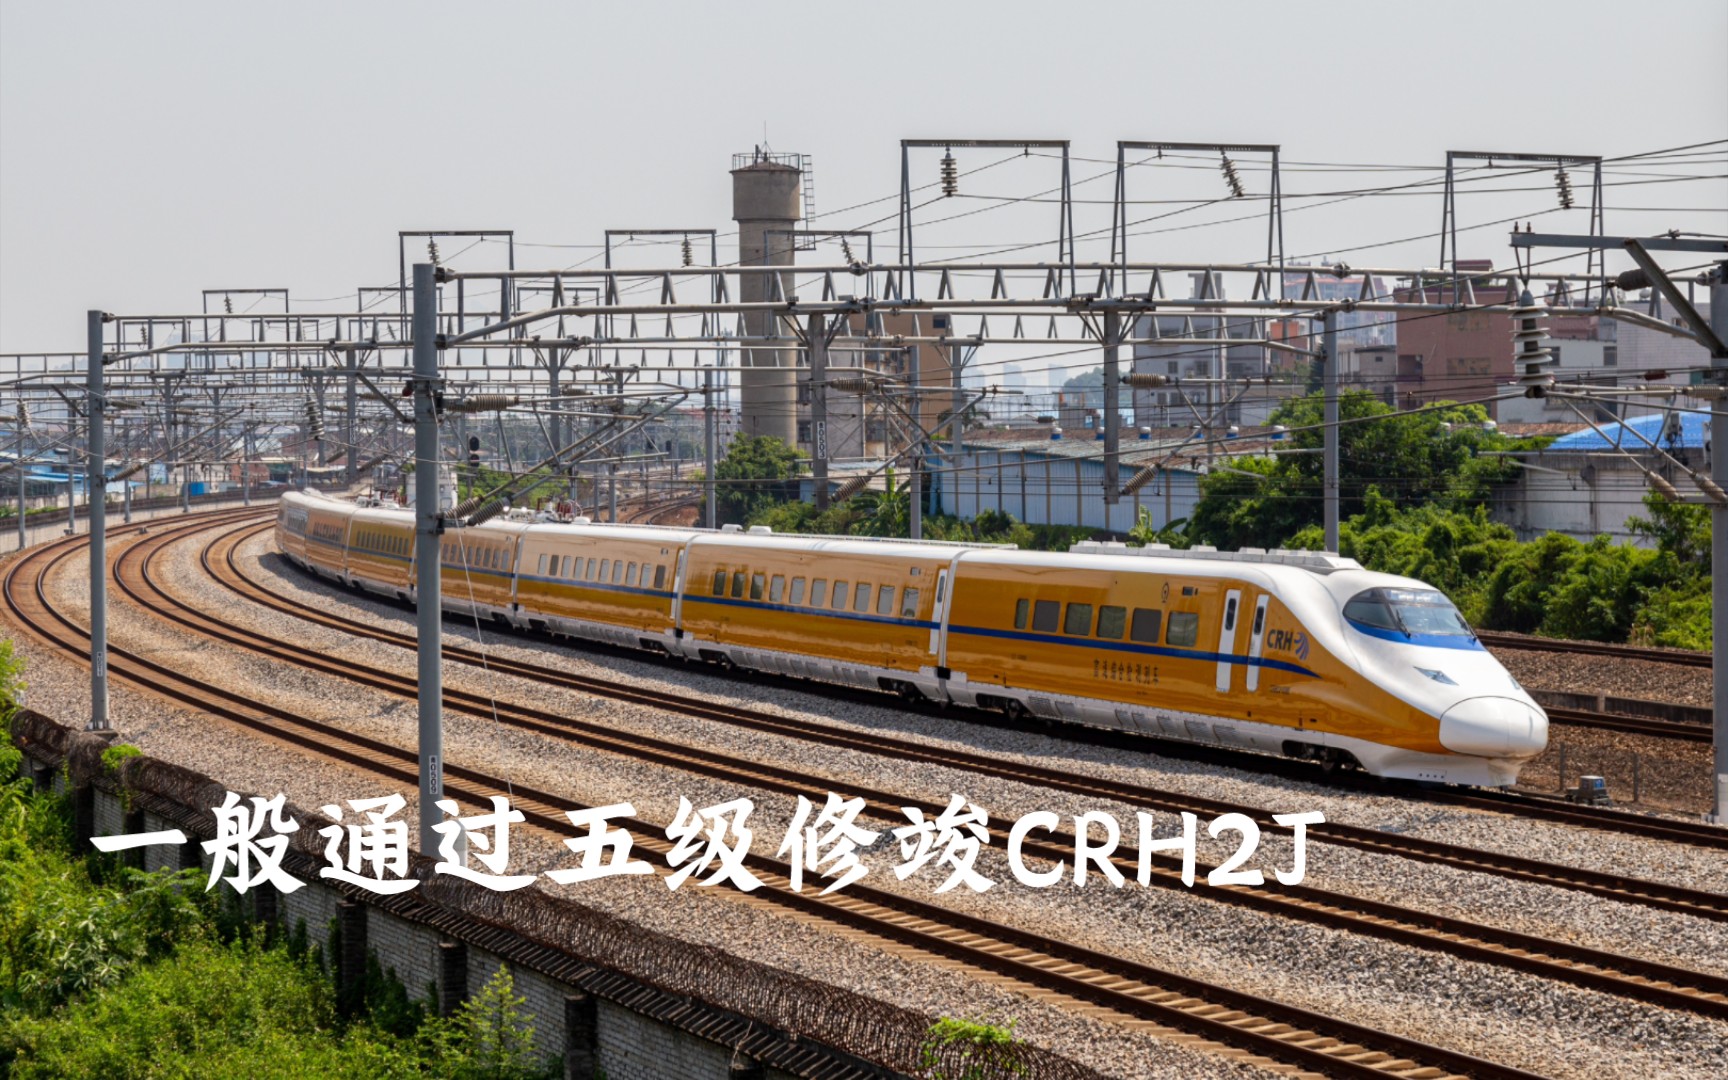 crh2j-0205检测列车图片